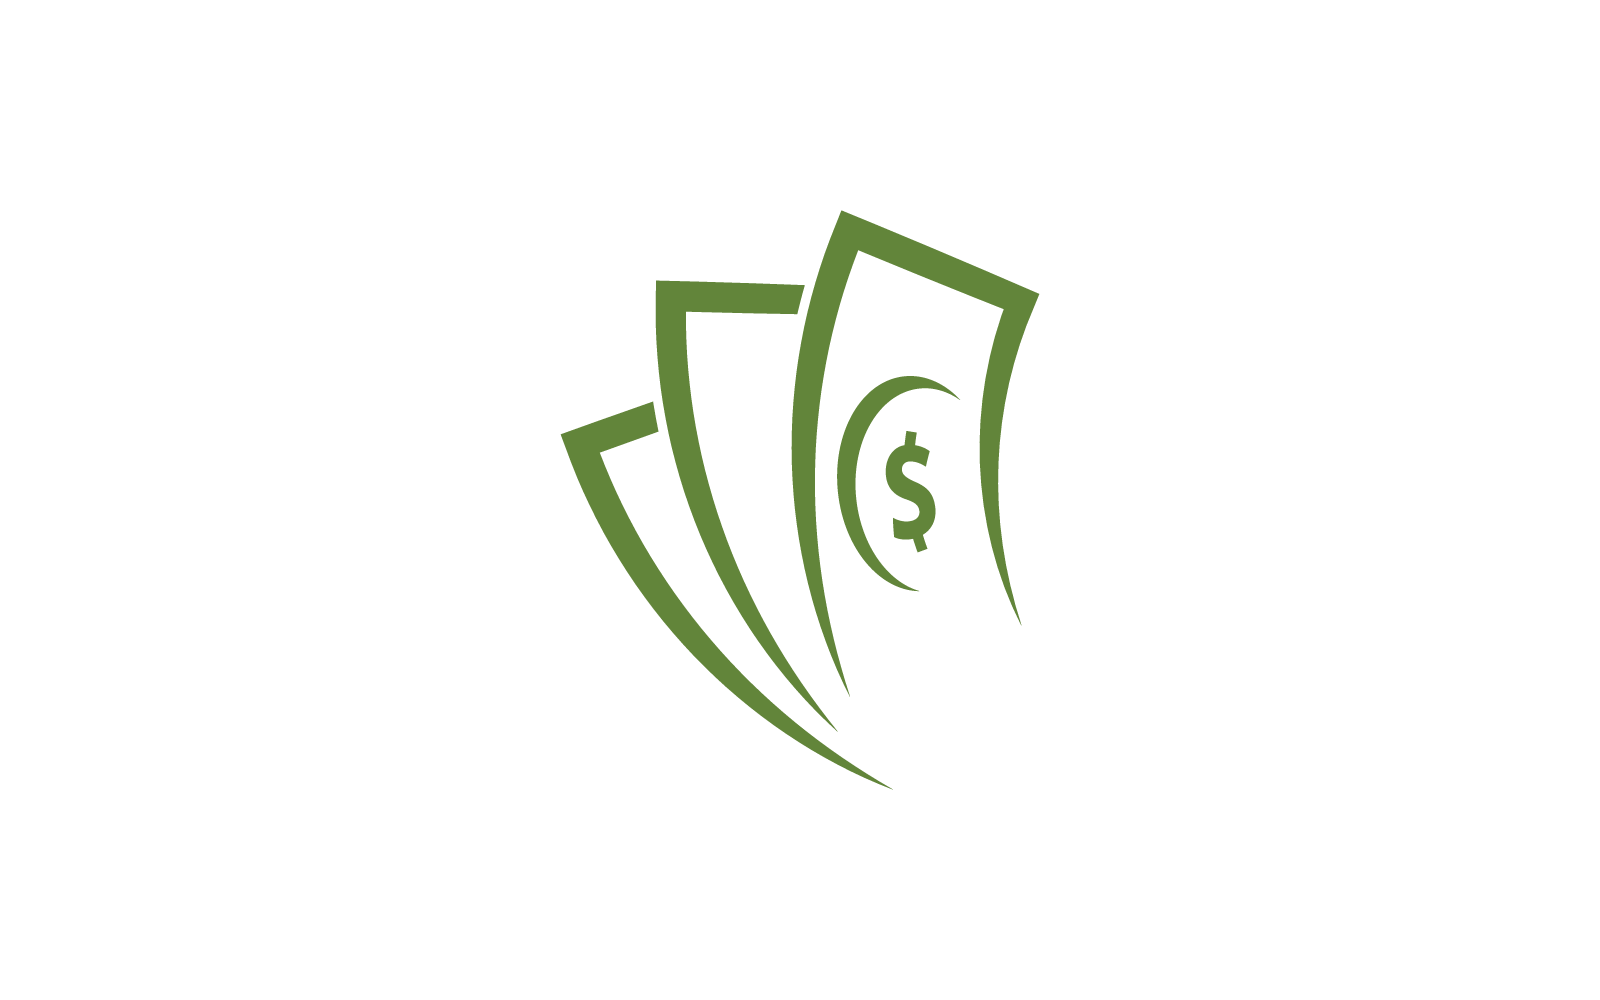 Money dollar vector logo icon flat design template